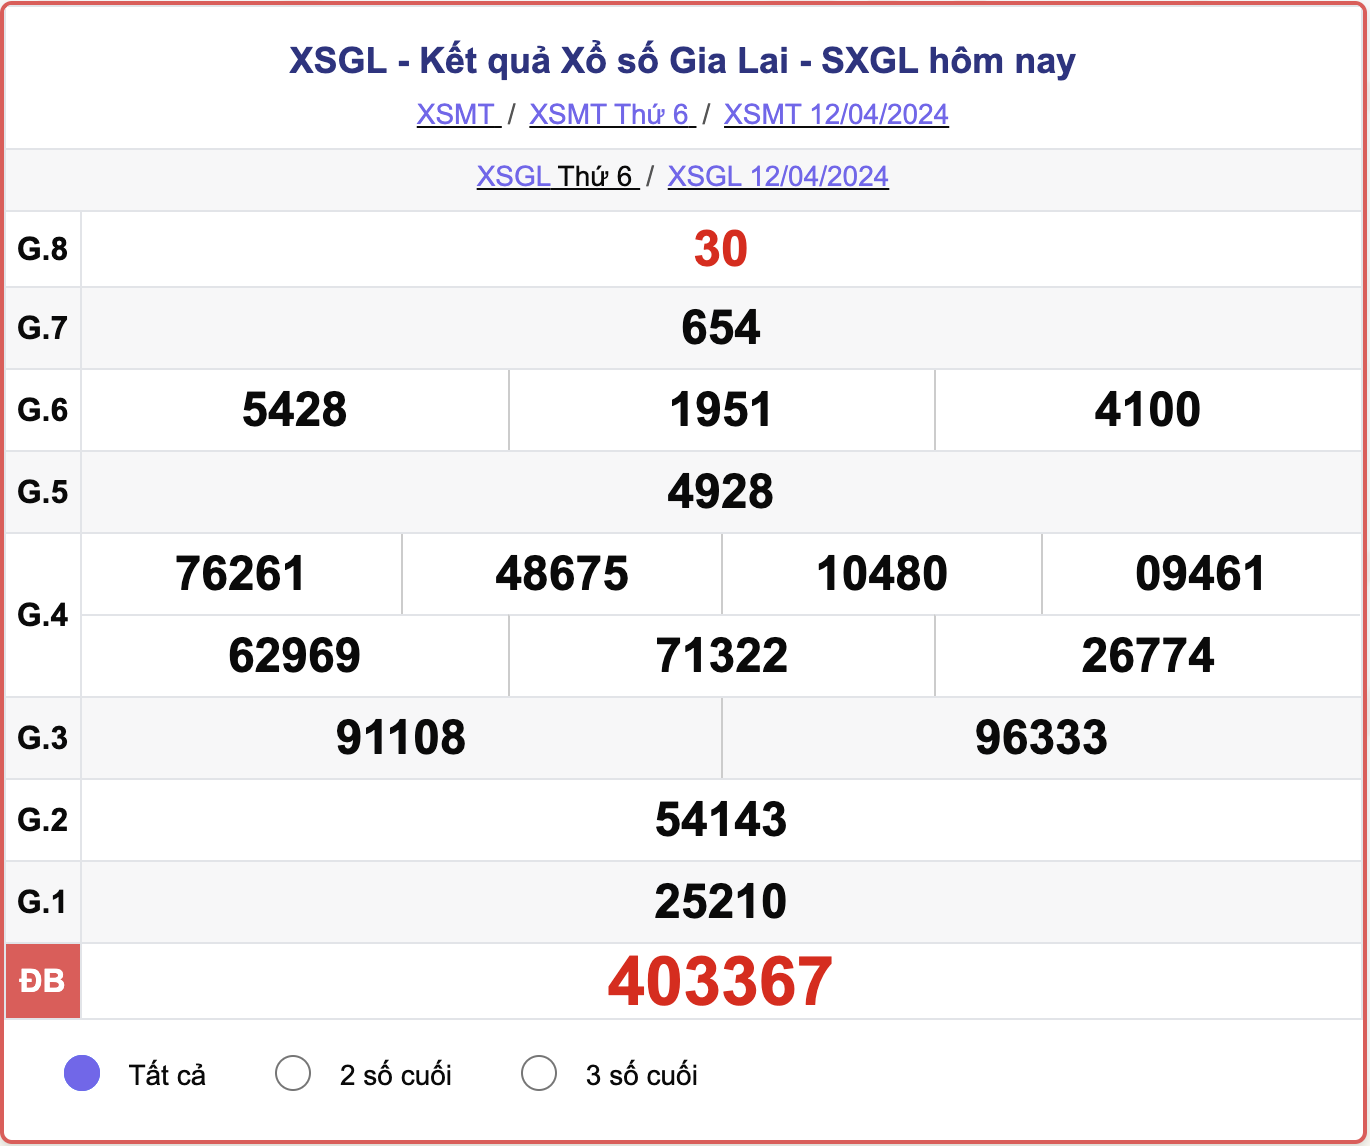 XSGL thứ 6, kết quả xổ số Gia Lai ngày 12/4/2024